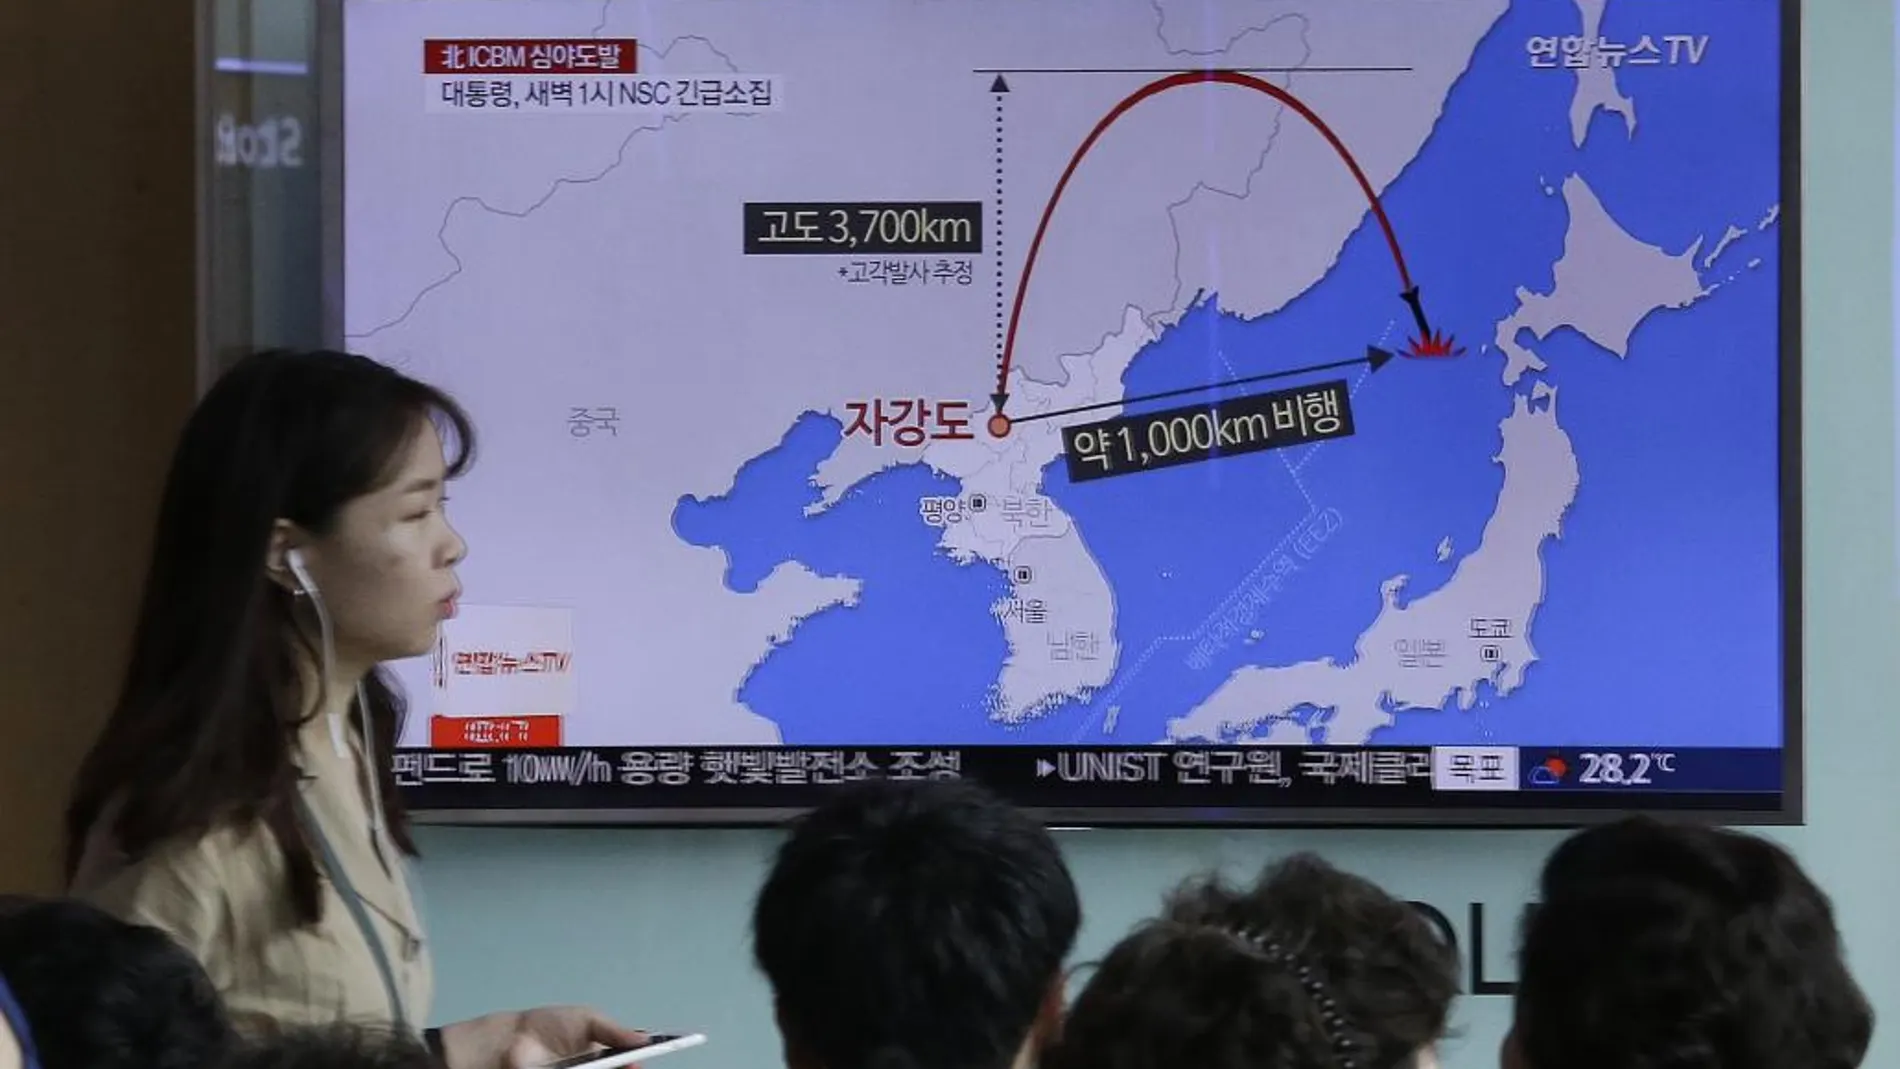 El ejército norcoreano disparó el ICBM a las 23.11 hora local norcoreana del viernes